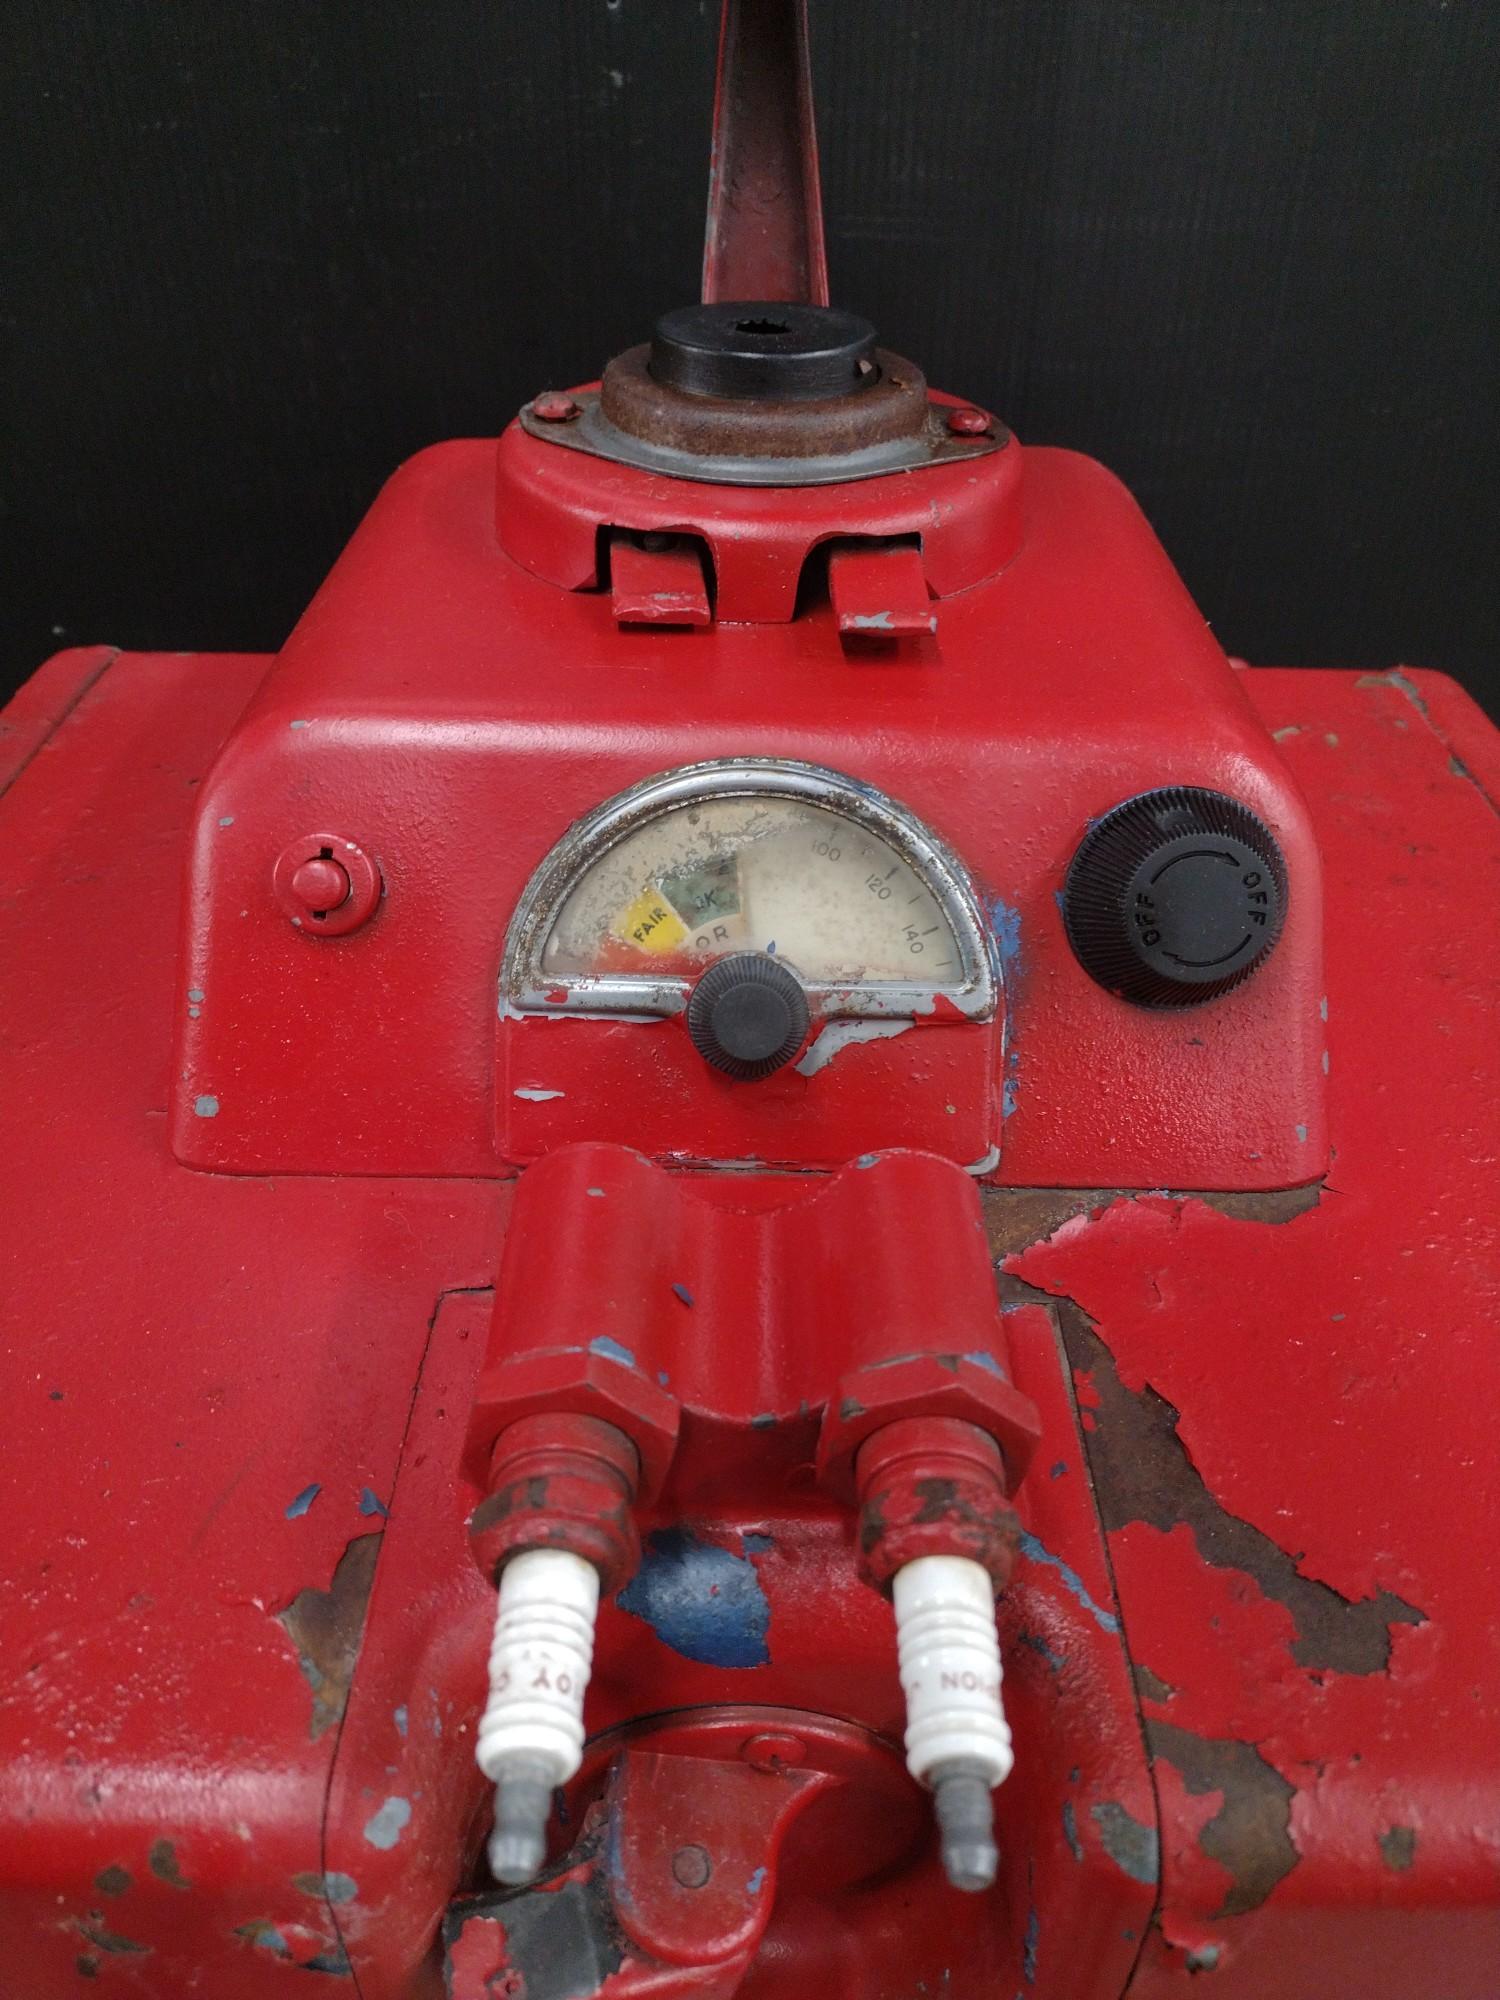 Vintage AC Spark Plug Cleaner and Test Station